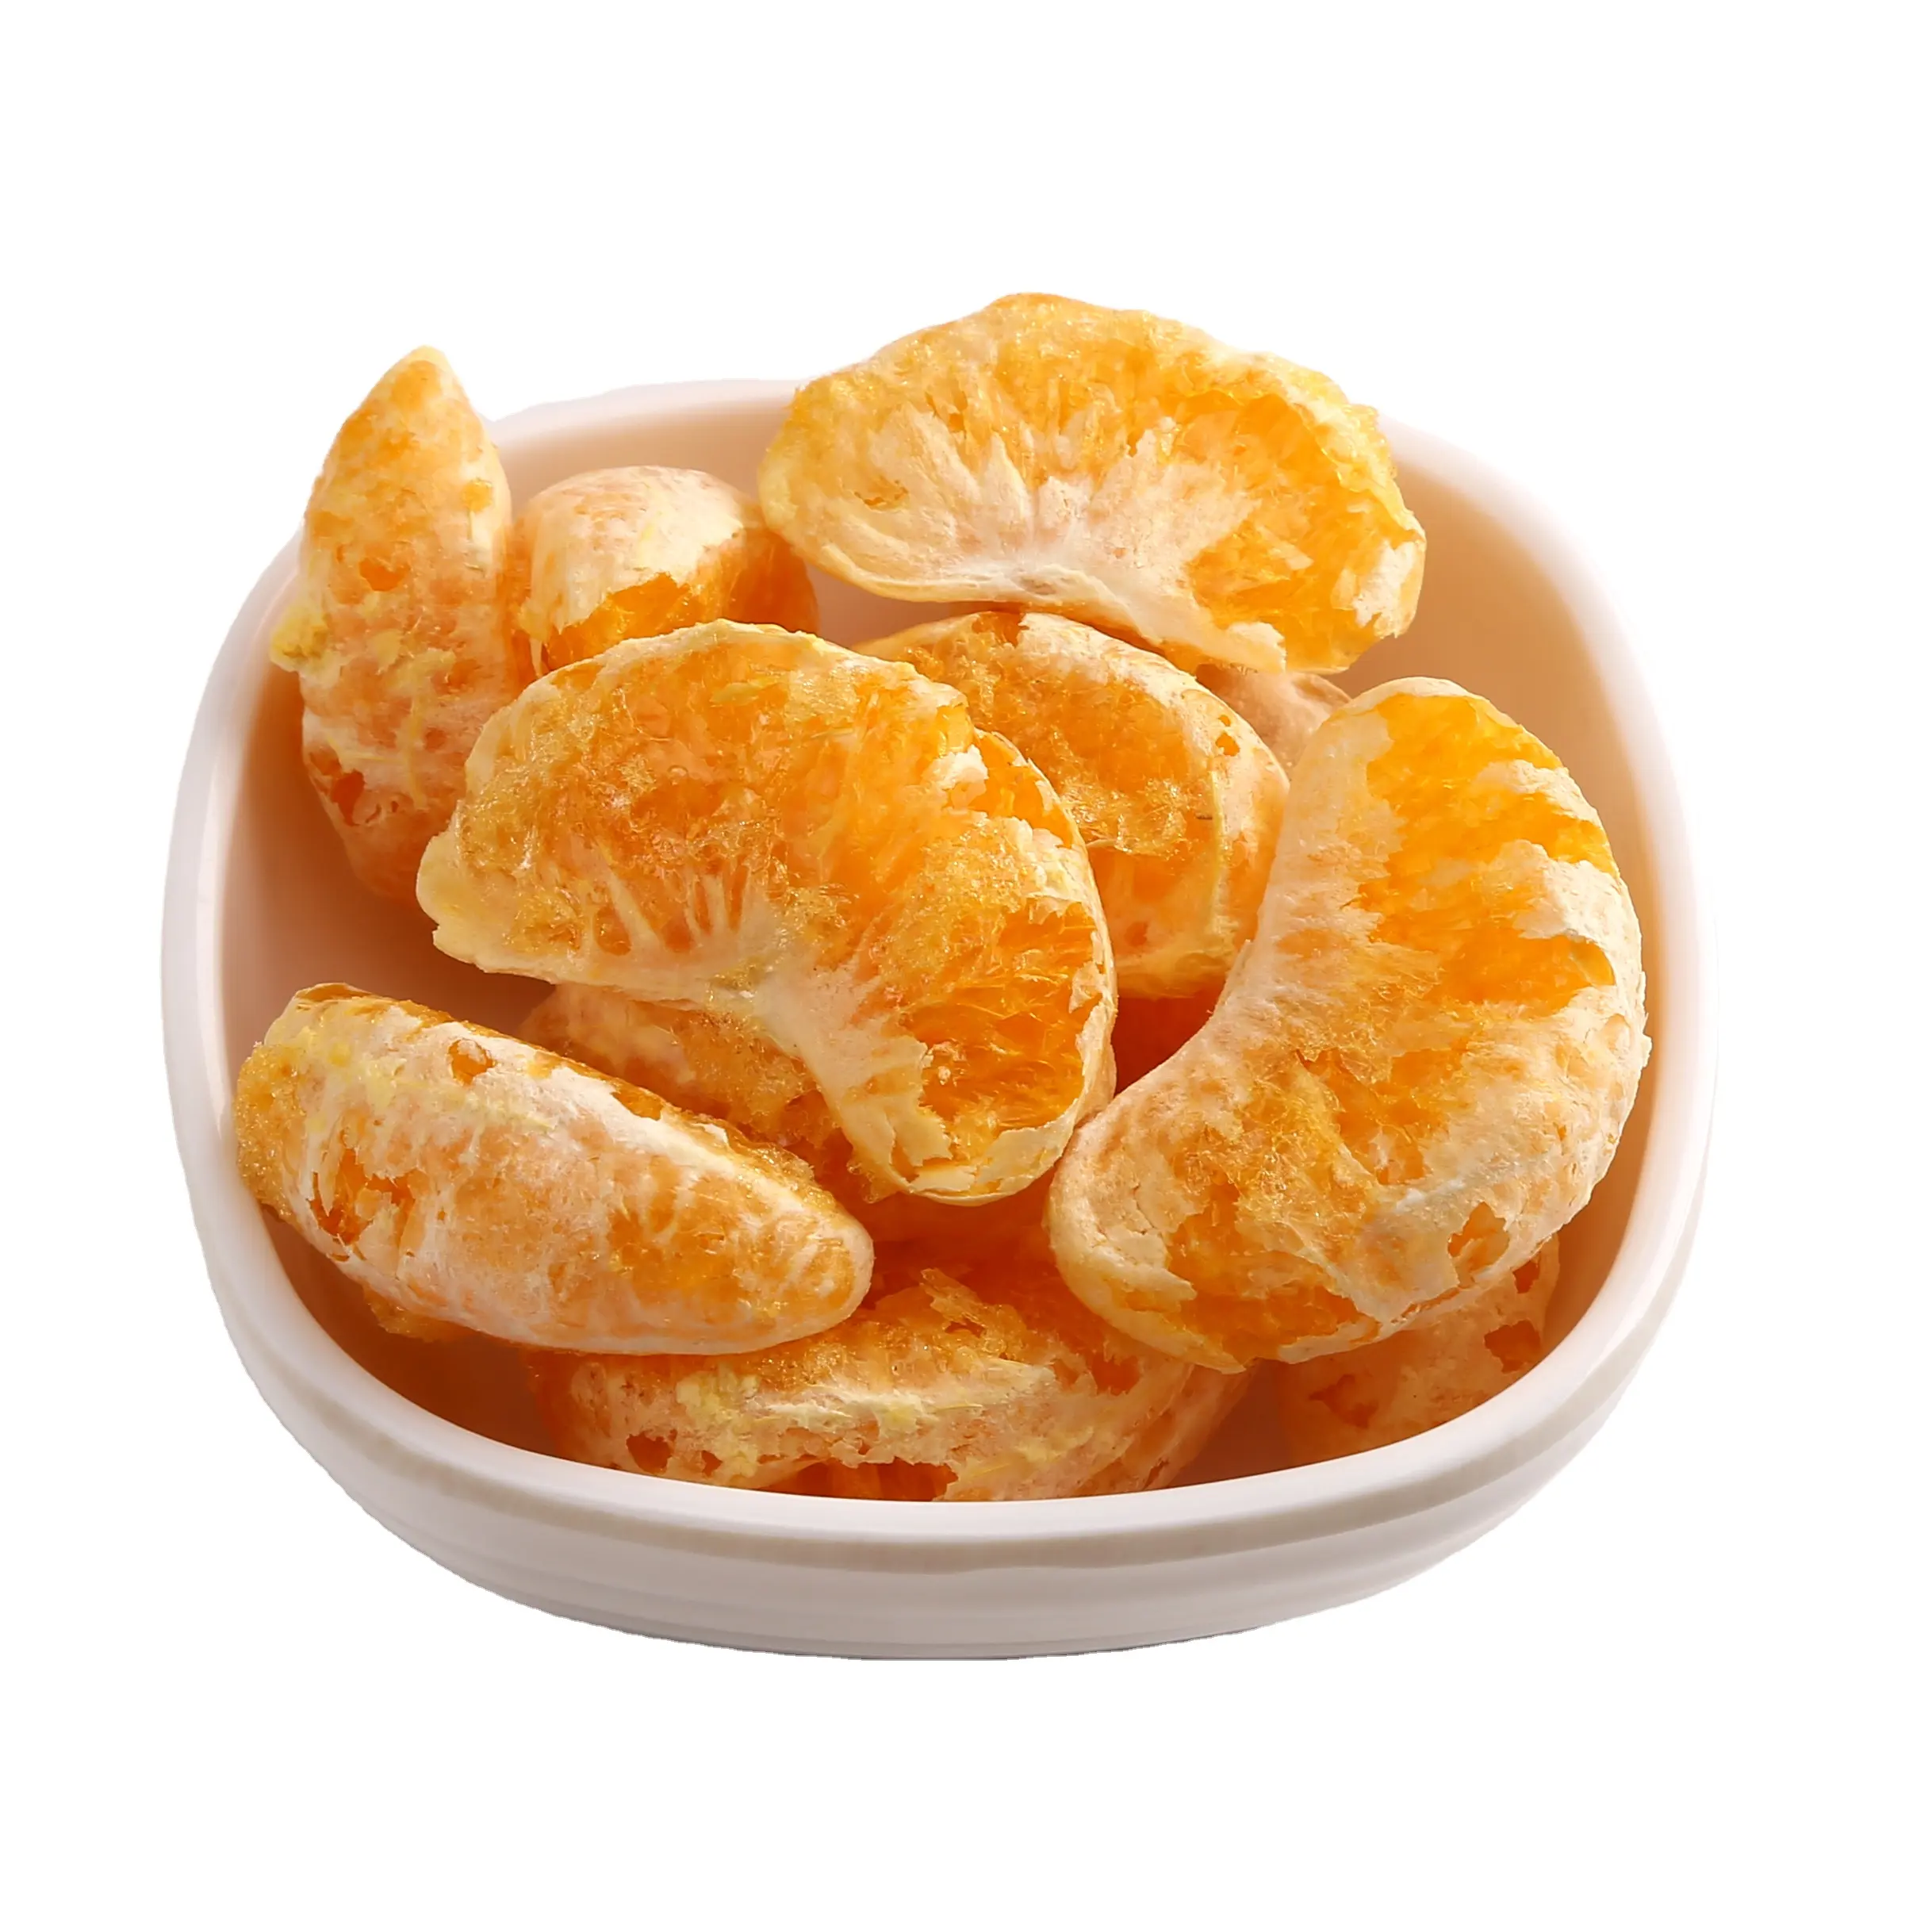 थोक फ्रीज सूखे मंदारिन नारंगी फल चाय विटामिन सप्लीमेंट के लिए अच्छी है थोक एफडी खाद्य फ्रीज सूखे टेंजेरीन